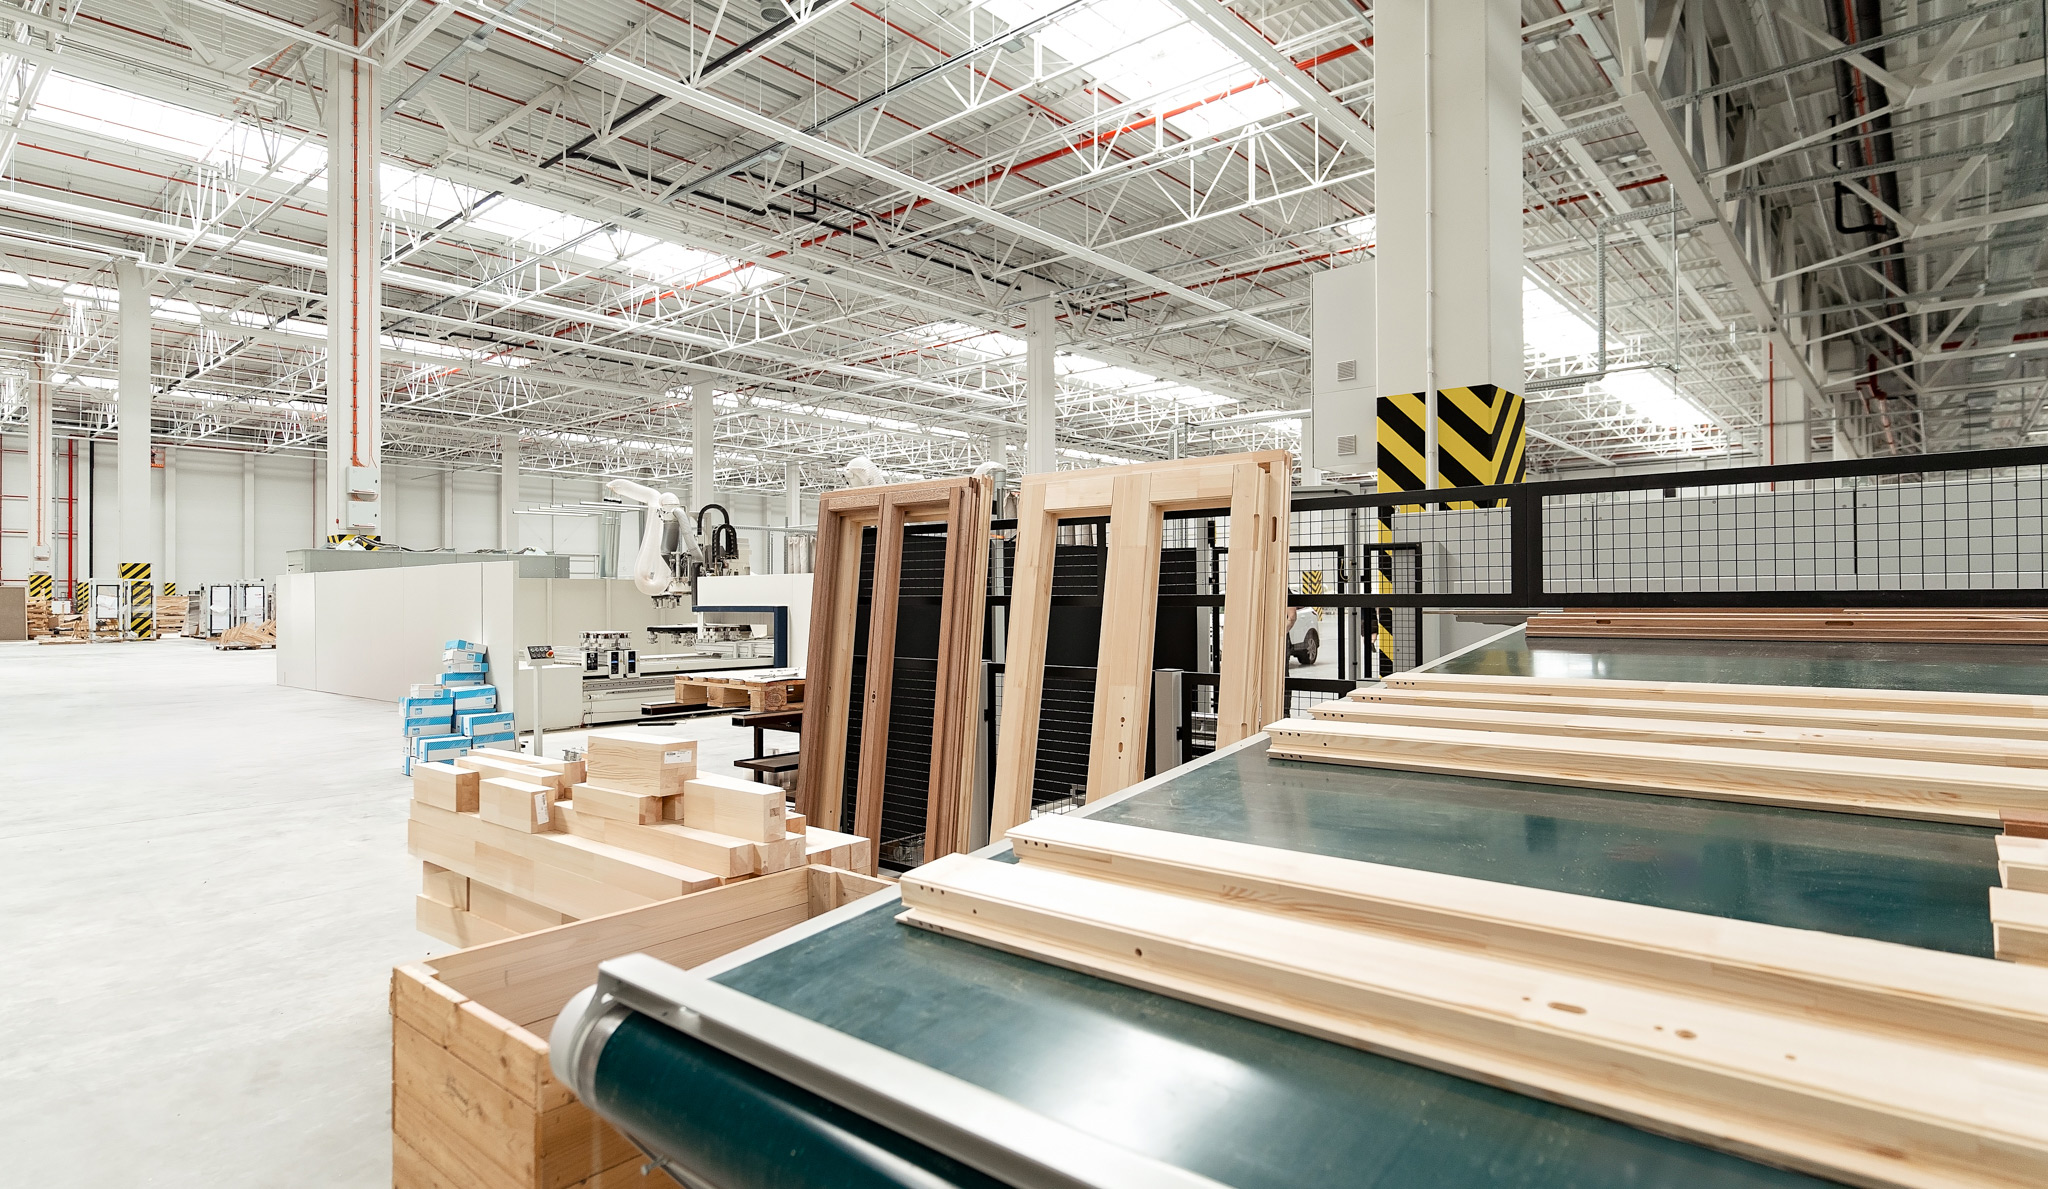 Im Juli haben wir eine Produktionsstätte in Kędzierzyn-Koźle eröffnet. Wir haben unsere Produktionskapazitäten erhöht – dieser Standort wird sich auf die Herstellung von Holzfenstern und -türen spezialisieren. Dort befindet sich auch ein Lager für Kanthölzer.